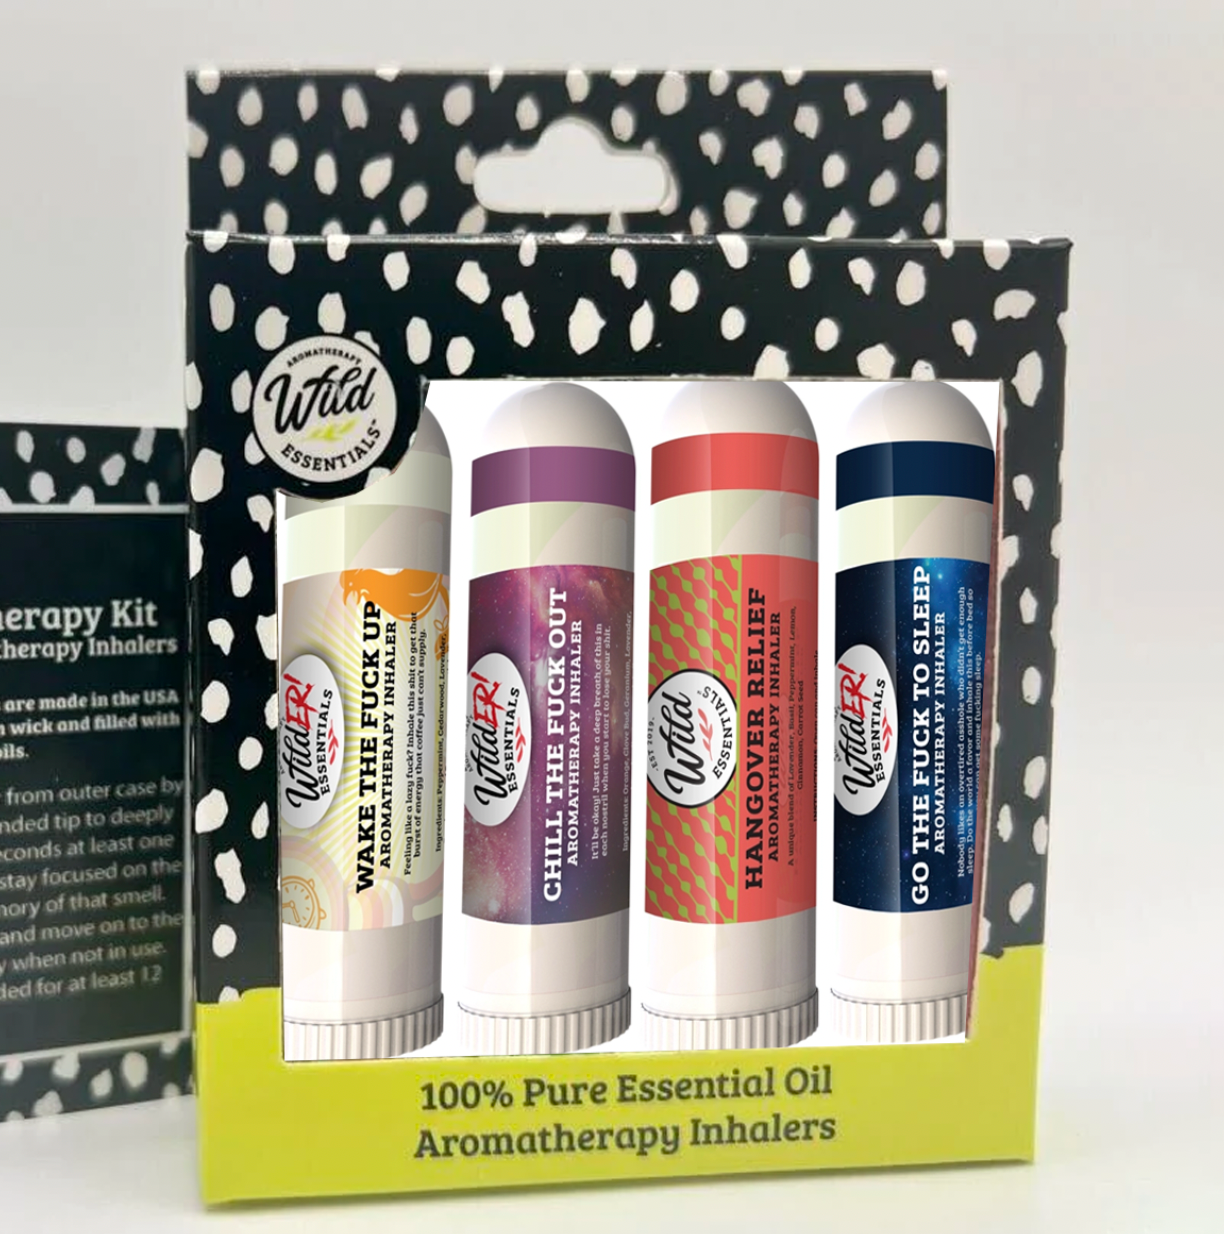 Wilder Essentials Aromatherapy Inhalers 4 Pack Assortment